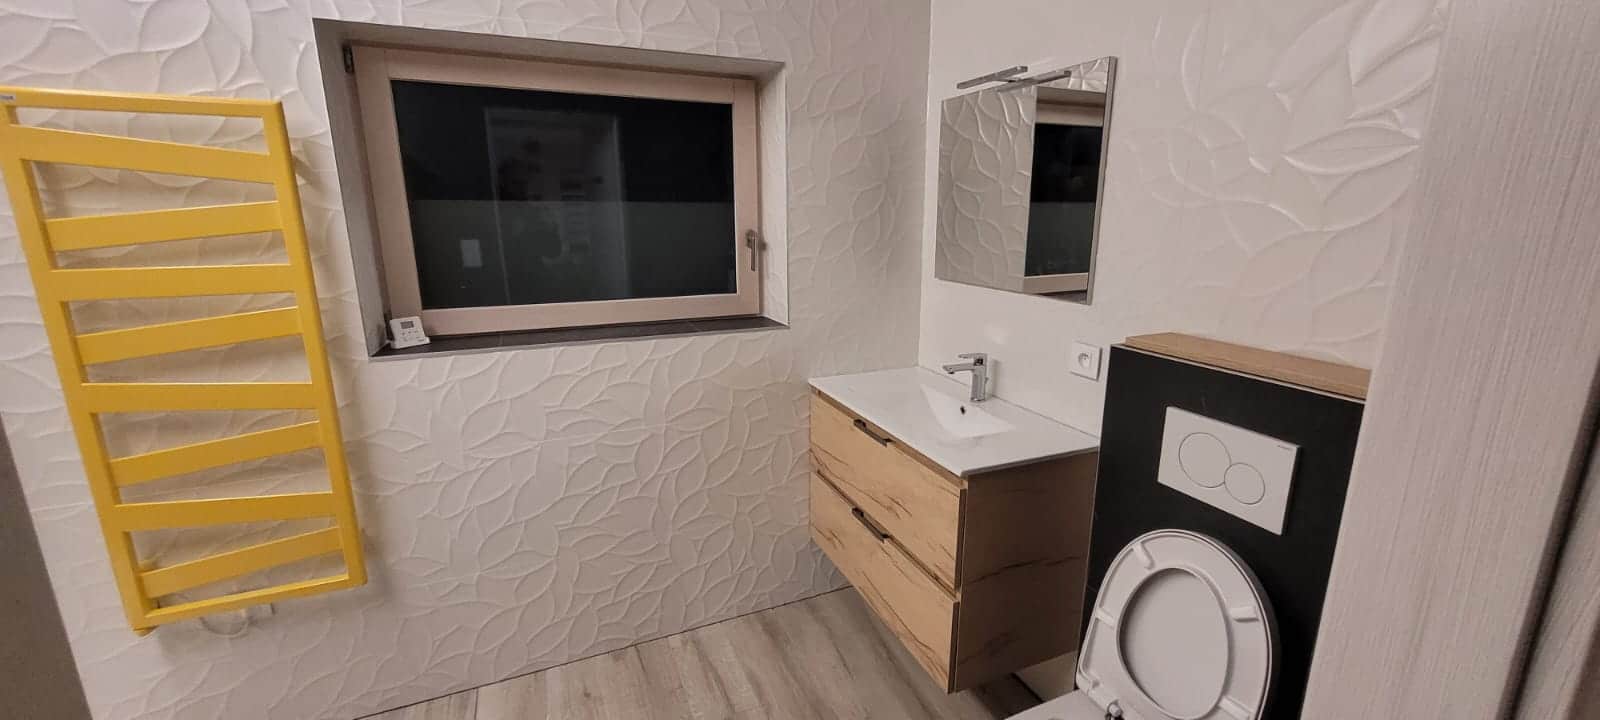 Une salle de bains clé en main réalisée par 2R Chauffage Sanitaire